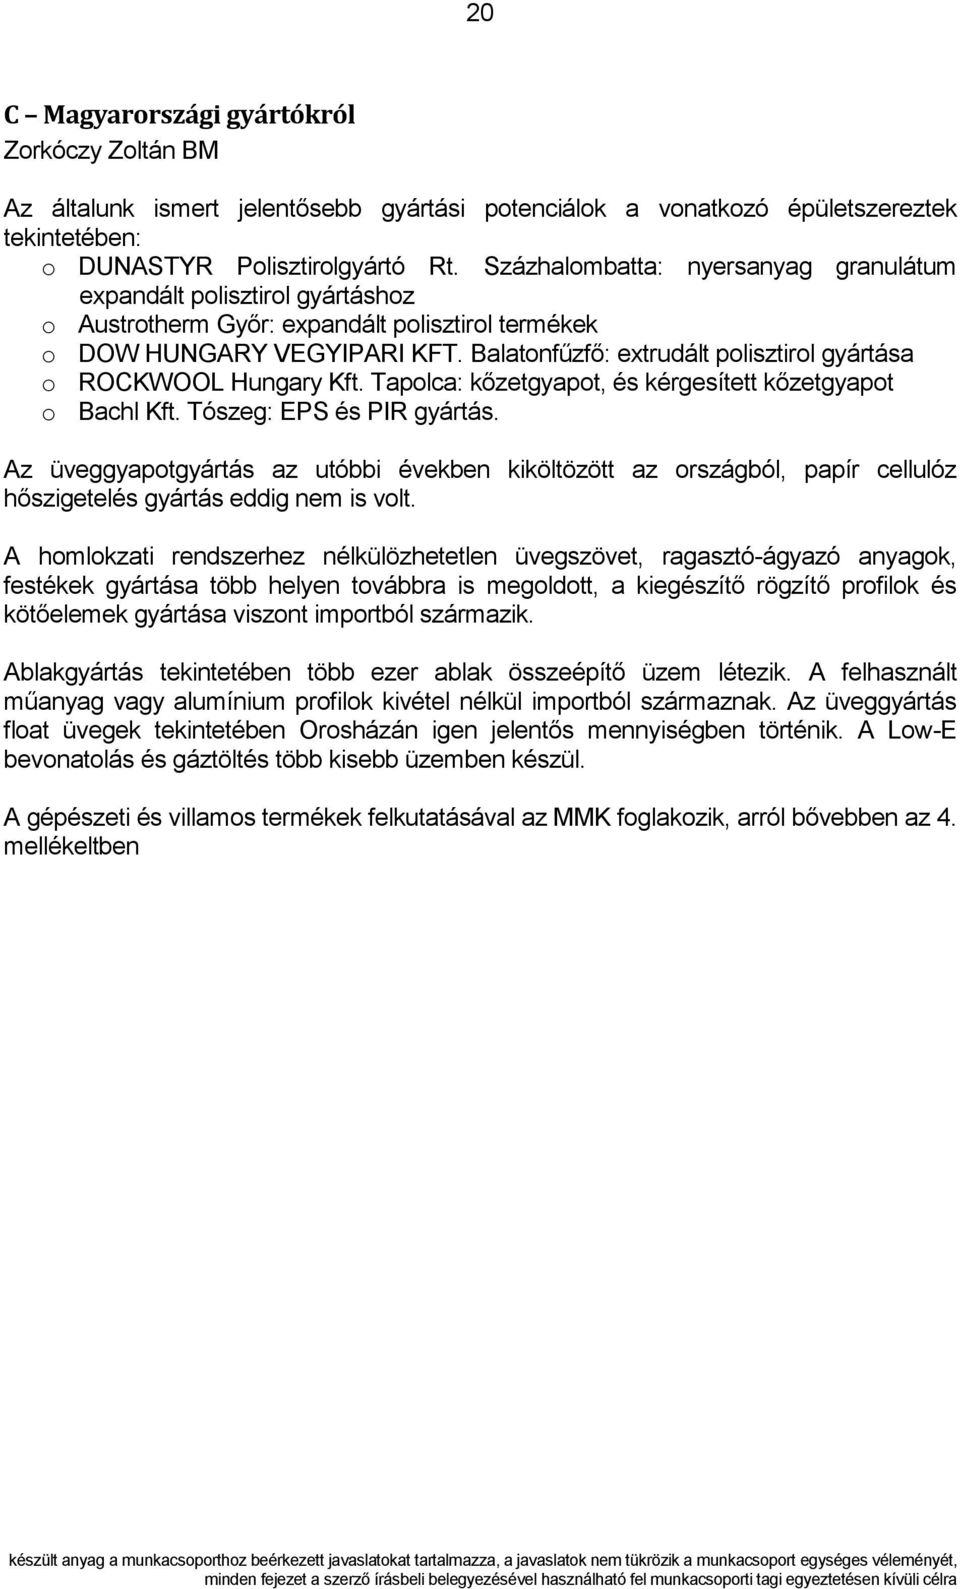 Balatonfűzfő: extrudált polisztirol gyártása o ROCKWOOL Hungary Kft. Tapolca: kőzetgyapot, és kérgesített kőzetgyapot o Bachl Kft. Tószeg: EPS és PIR gyártás.